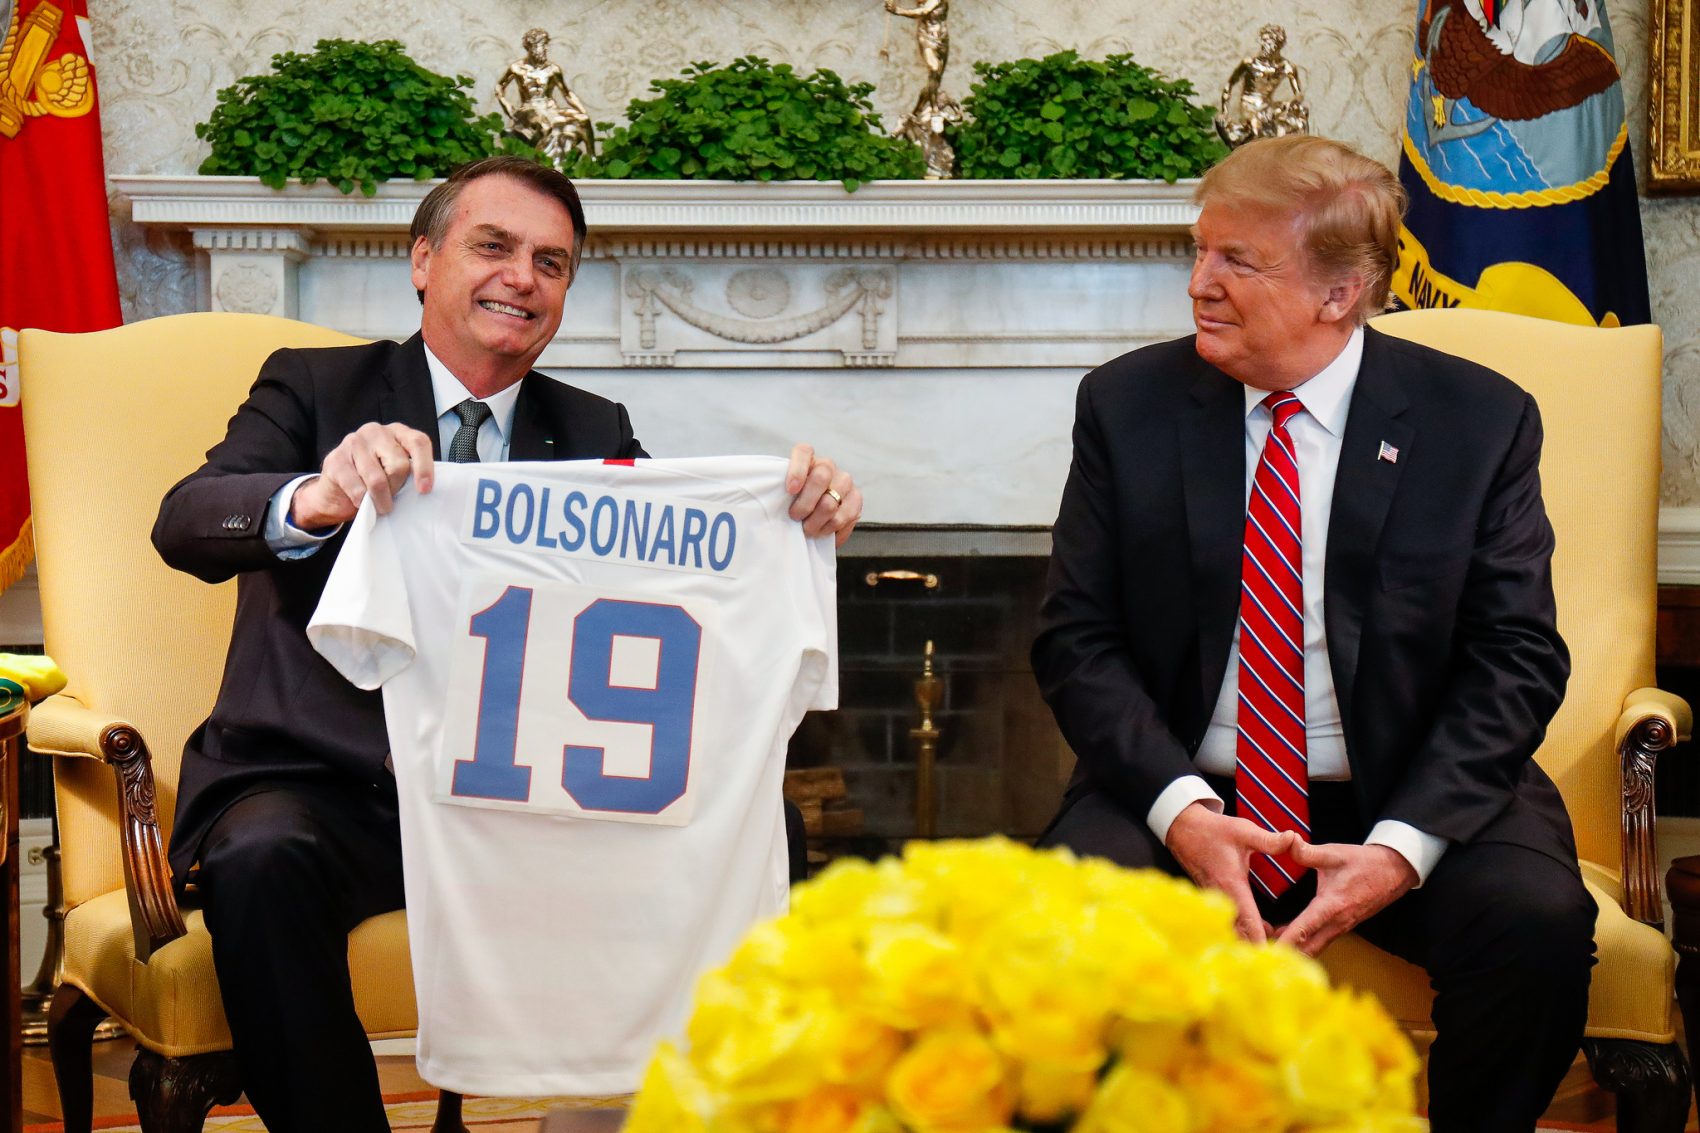 Durante encontro, presidentes trocaram camisetas das seleções de futebol de cada país, Trump recebeu a camisa 10, que foi de Pelé e Bolsonaro recebeu a de número 19